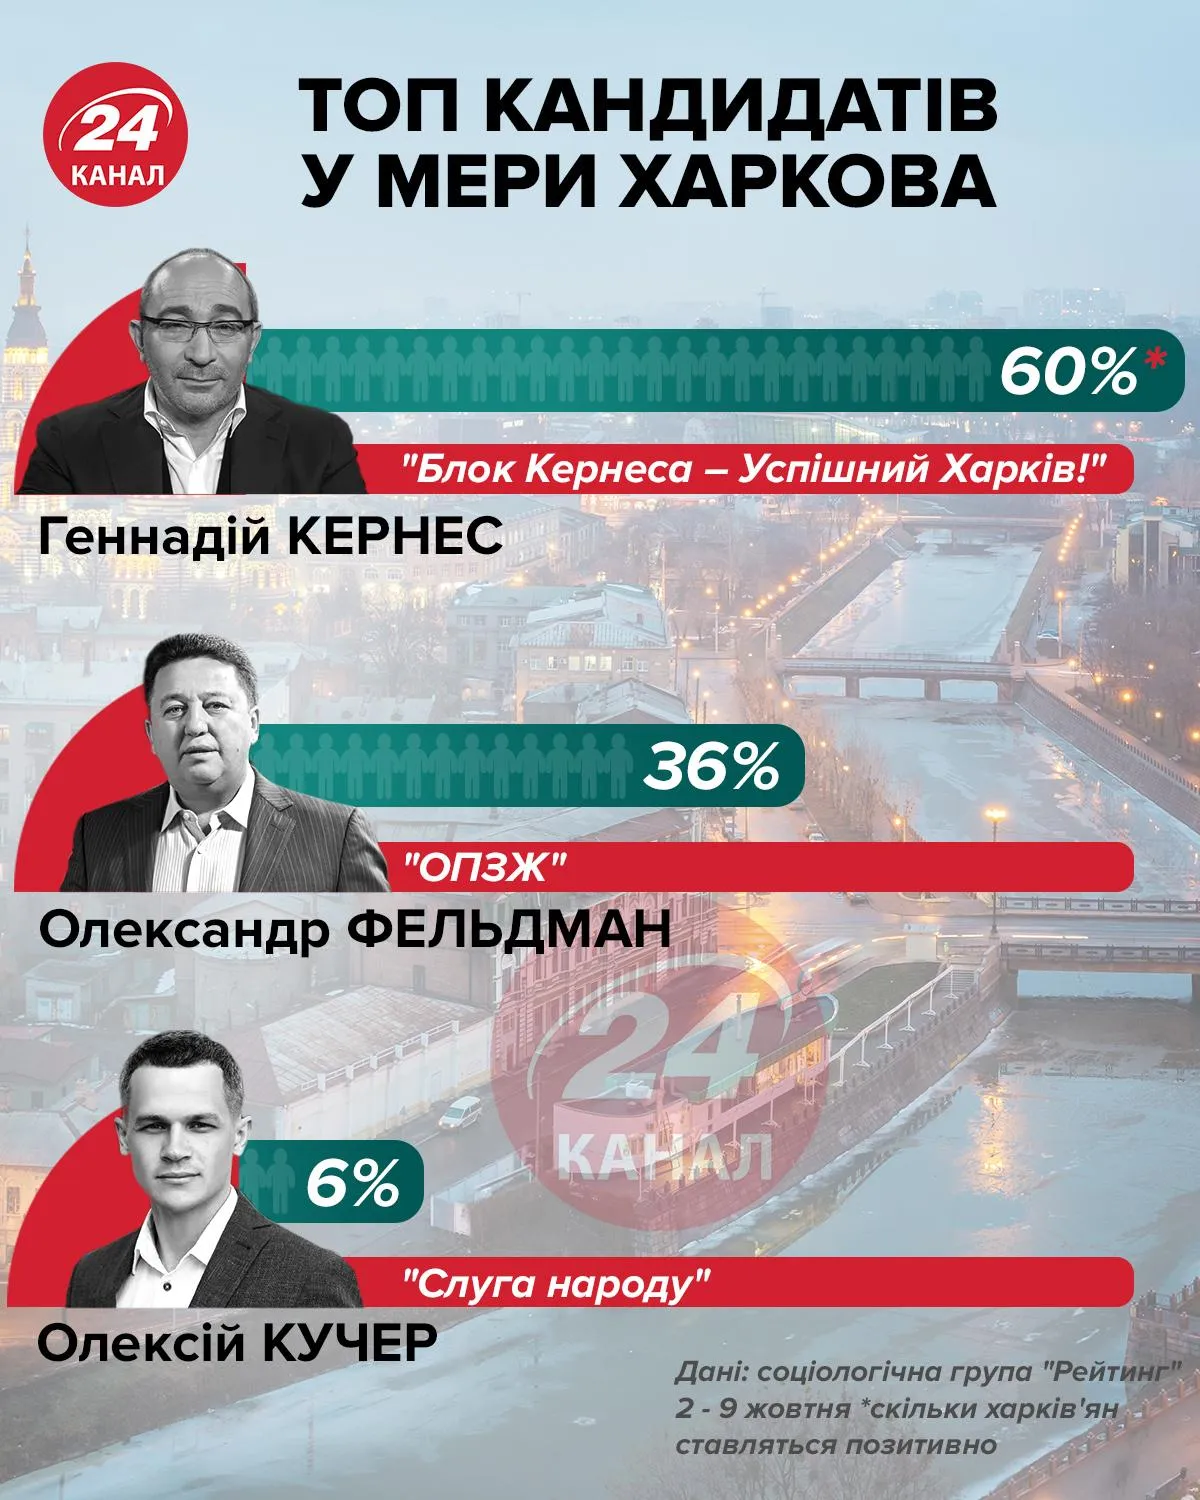 Кандидаты в меры Харькова инфографика 24 канал